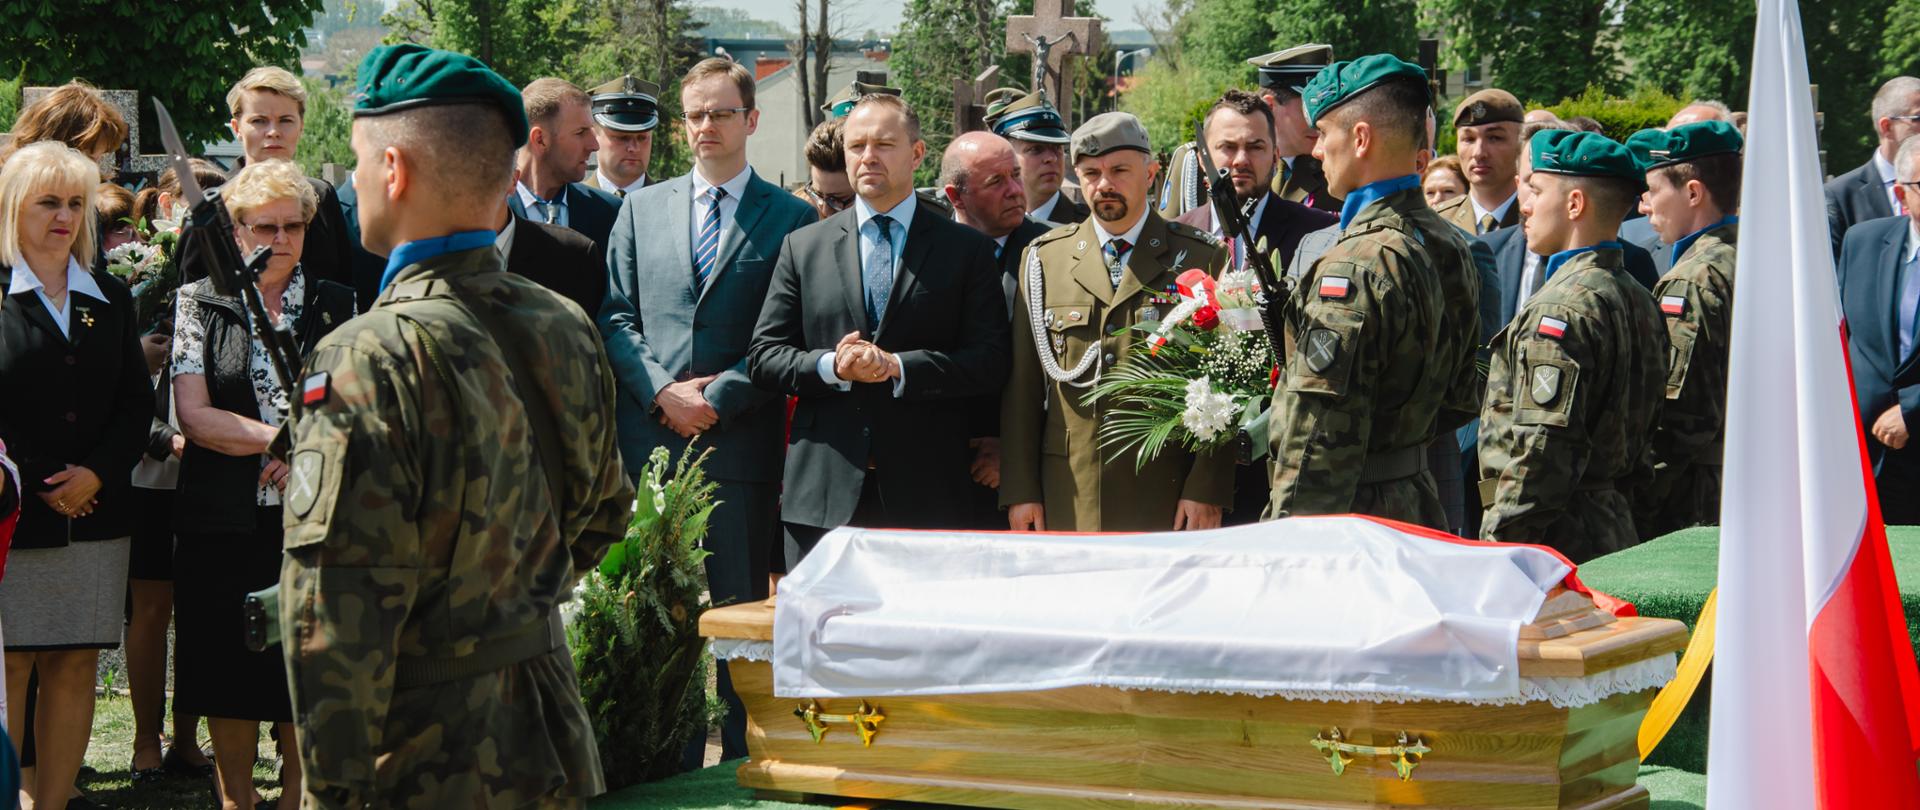 Uroczystości pogrzebowe Romualda Lenczewskiego zastrzelonego w 1943 roku